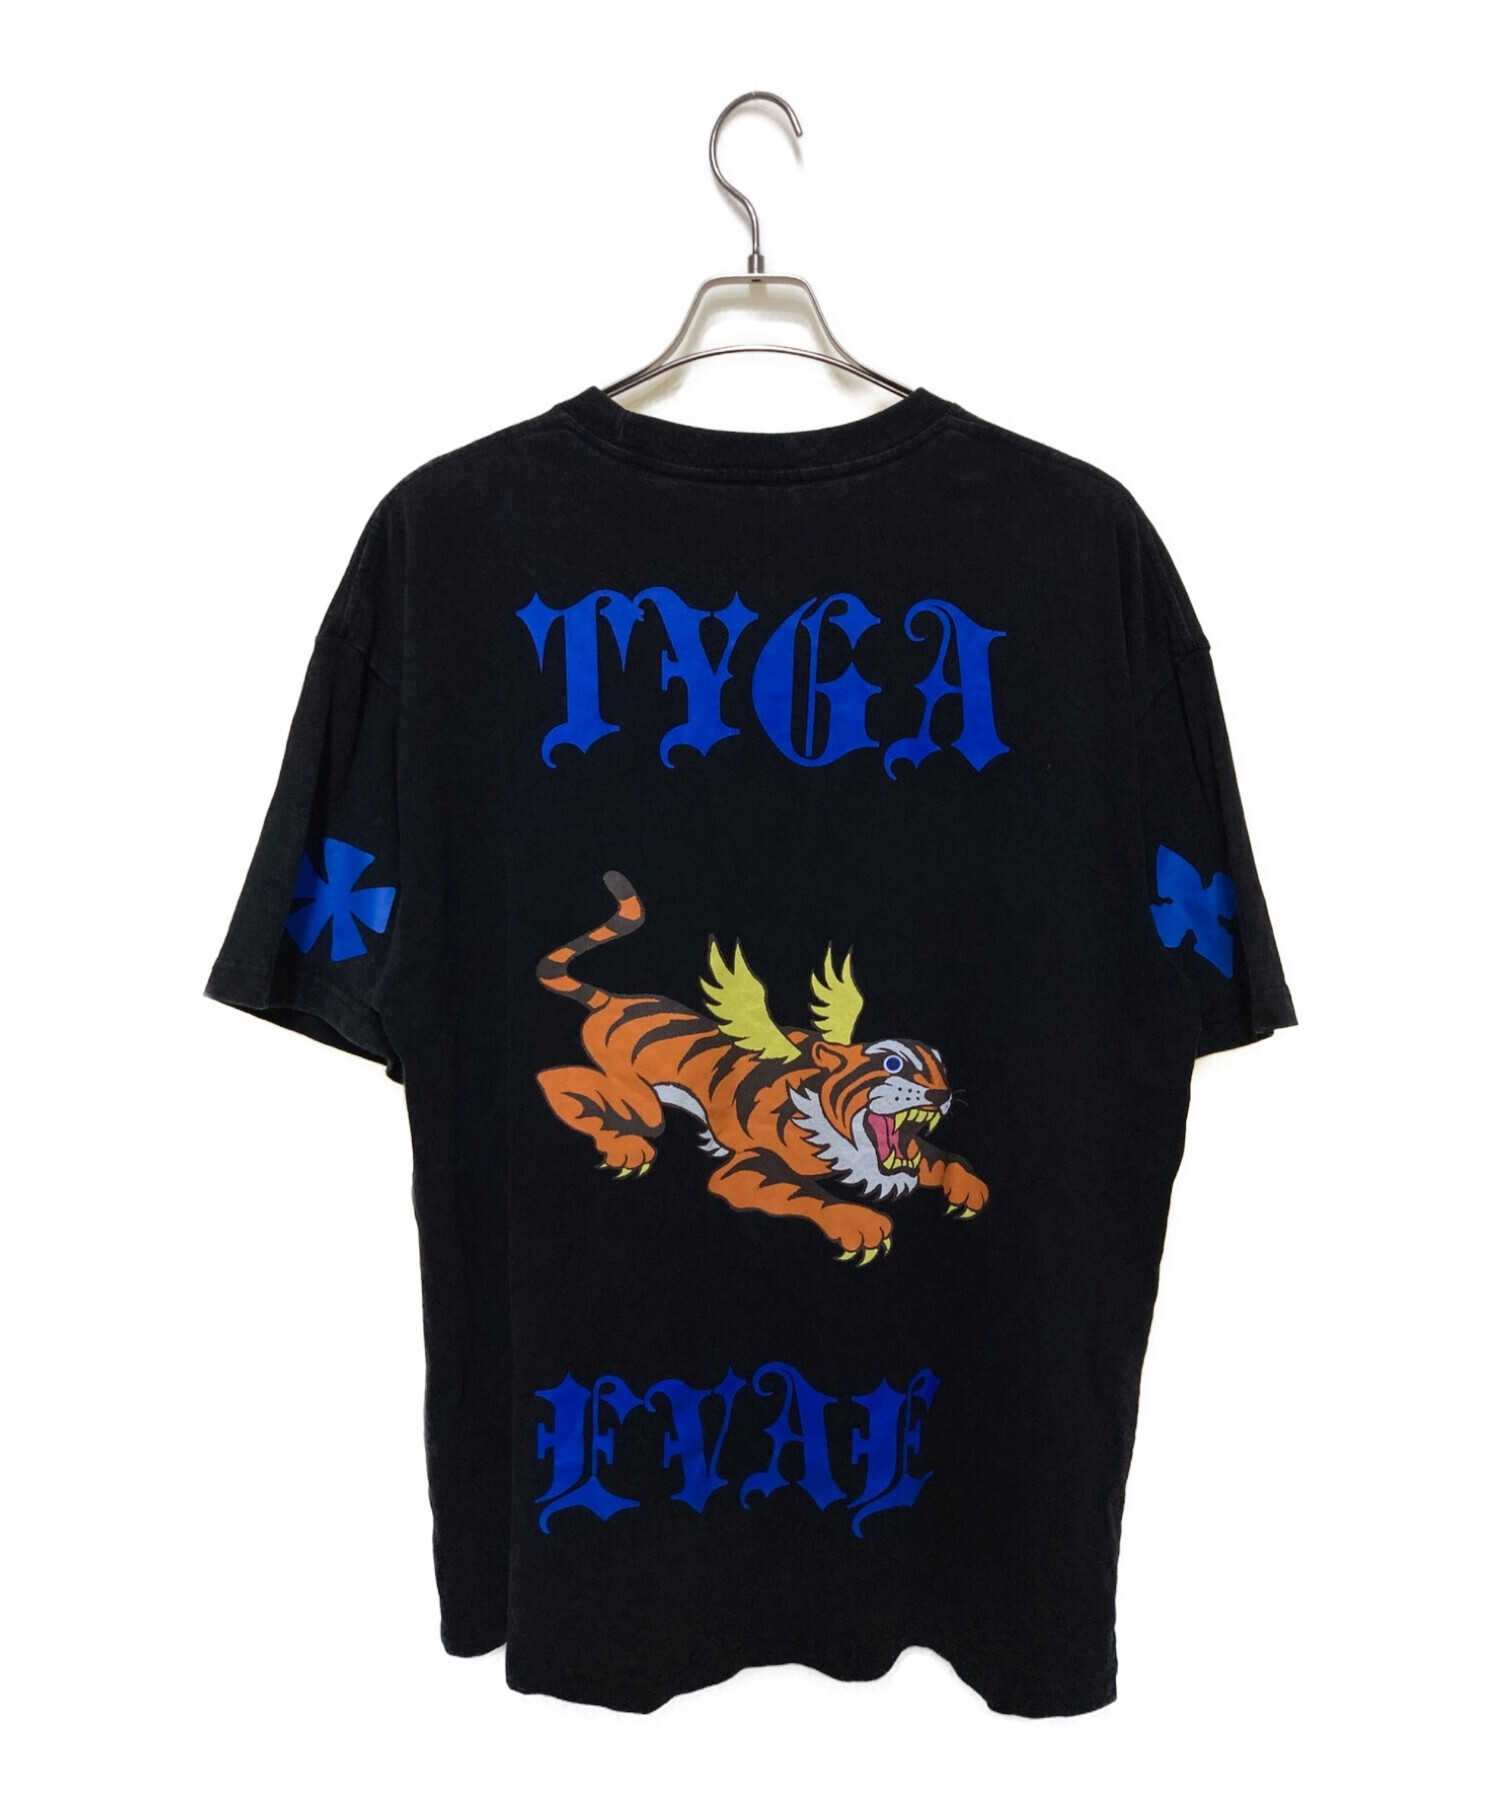 TYGA (タイガ) EVAE MOB (エバーモブ) Tシャツ ブラック サイズ:XL